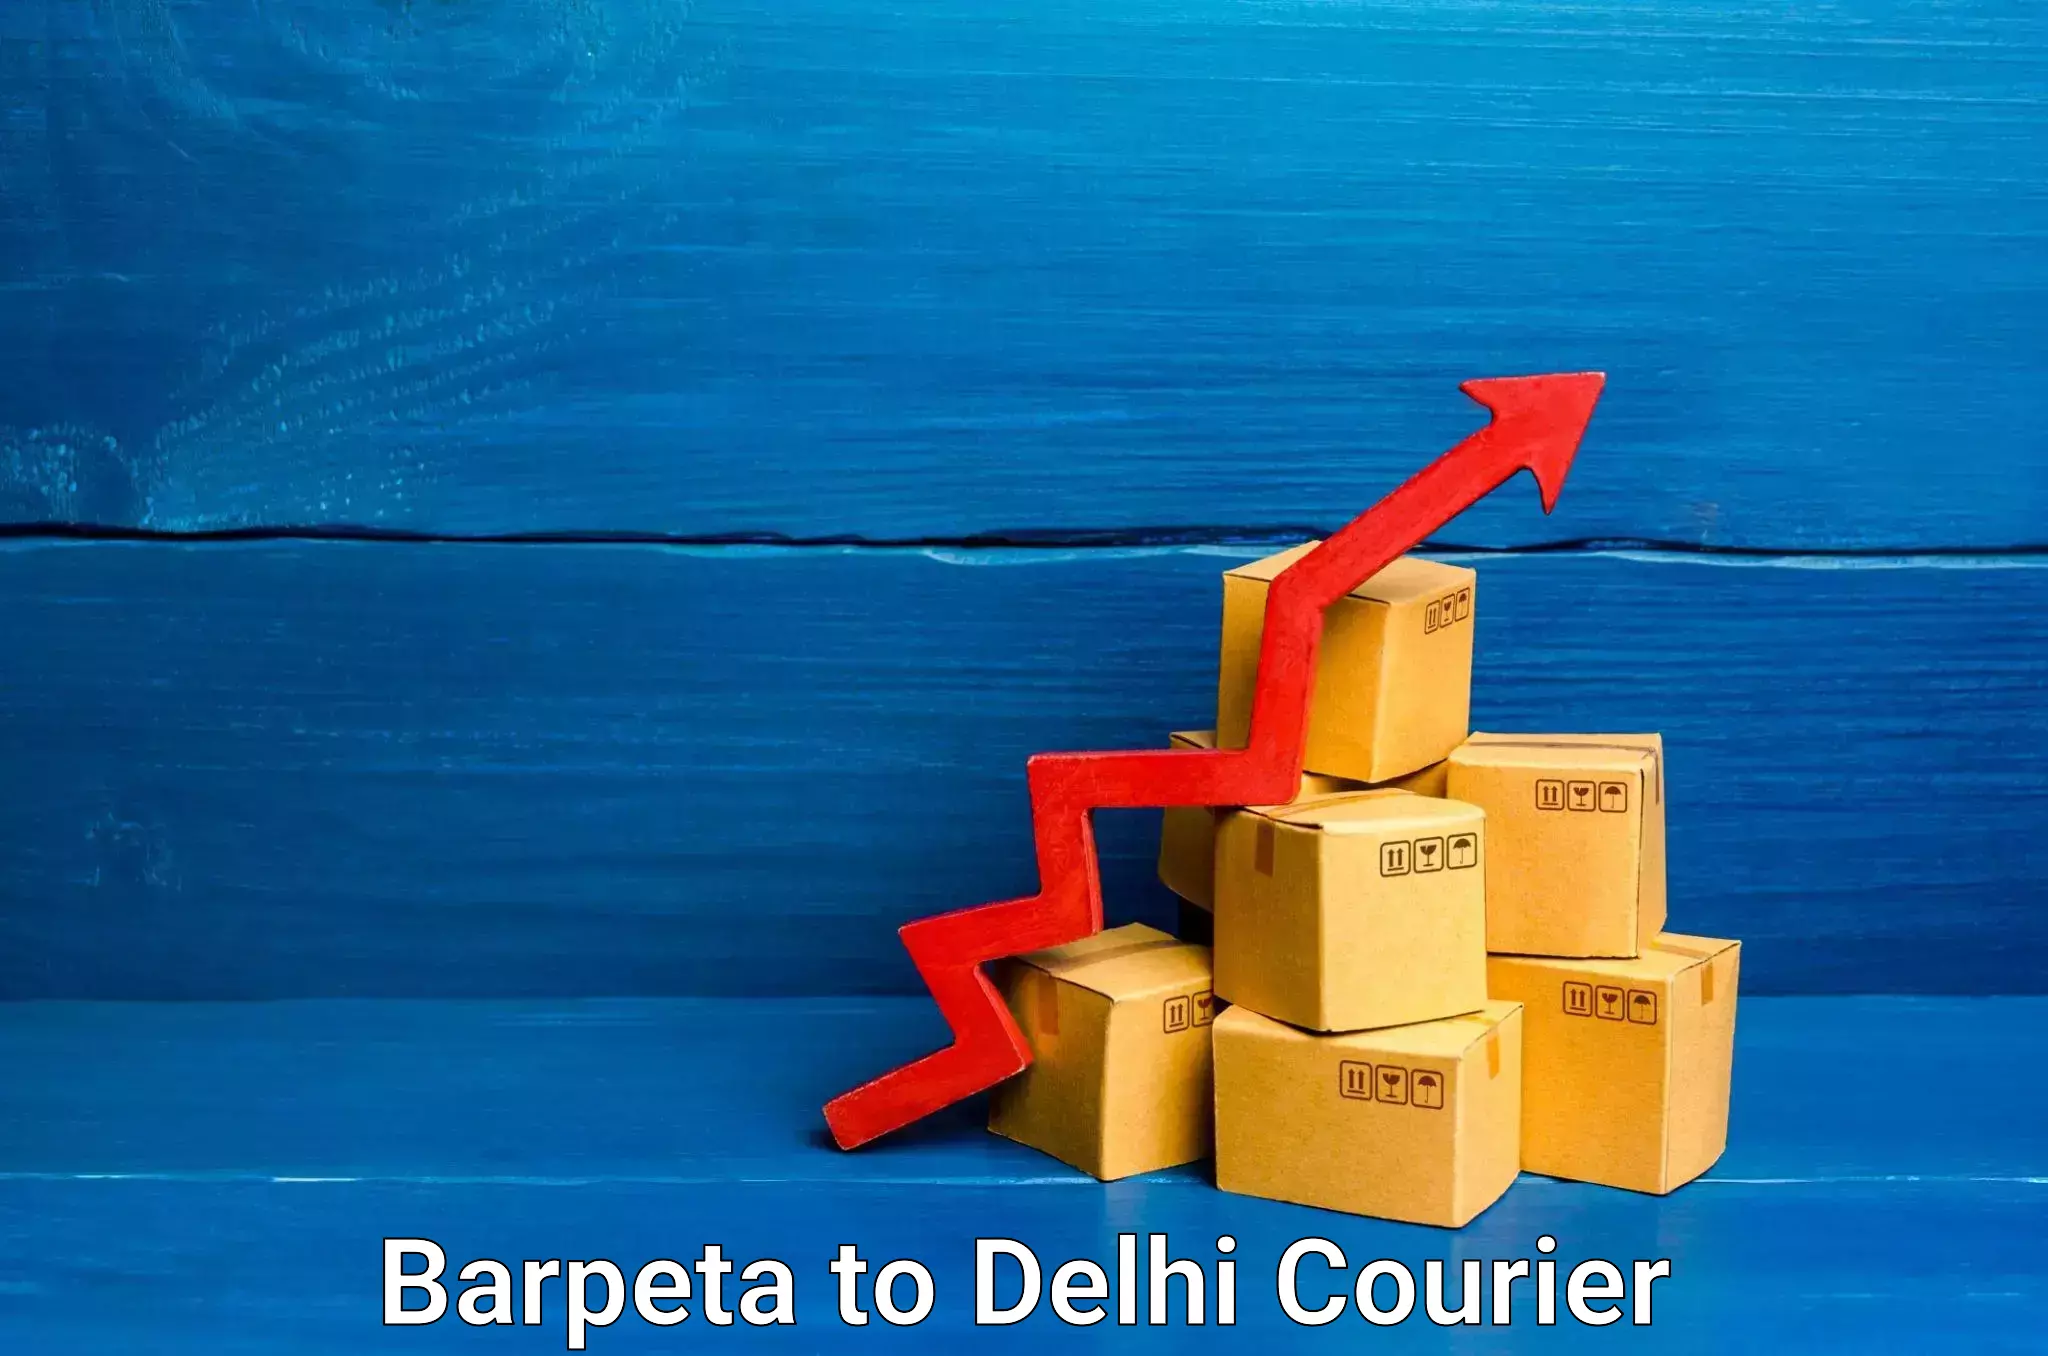 Digital courier platforms Barpeta to Indraprastha